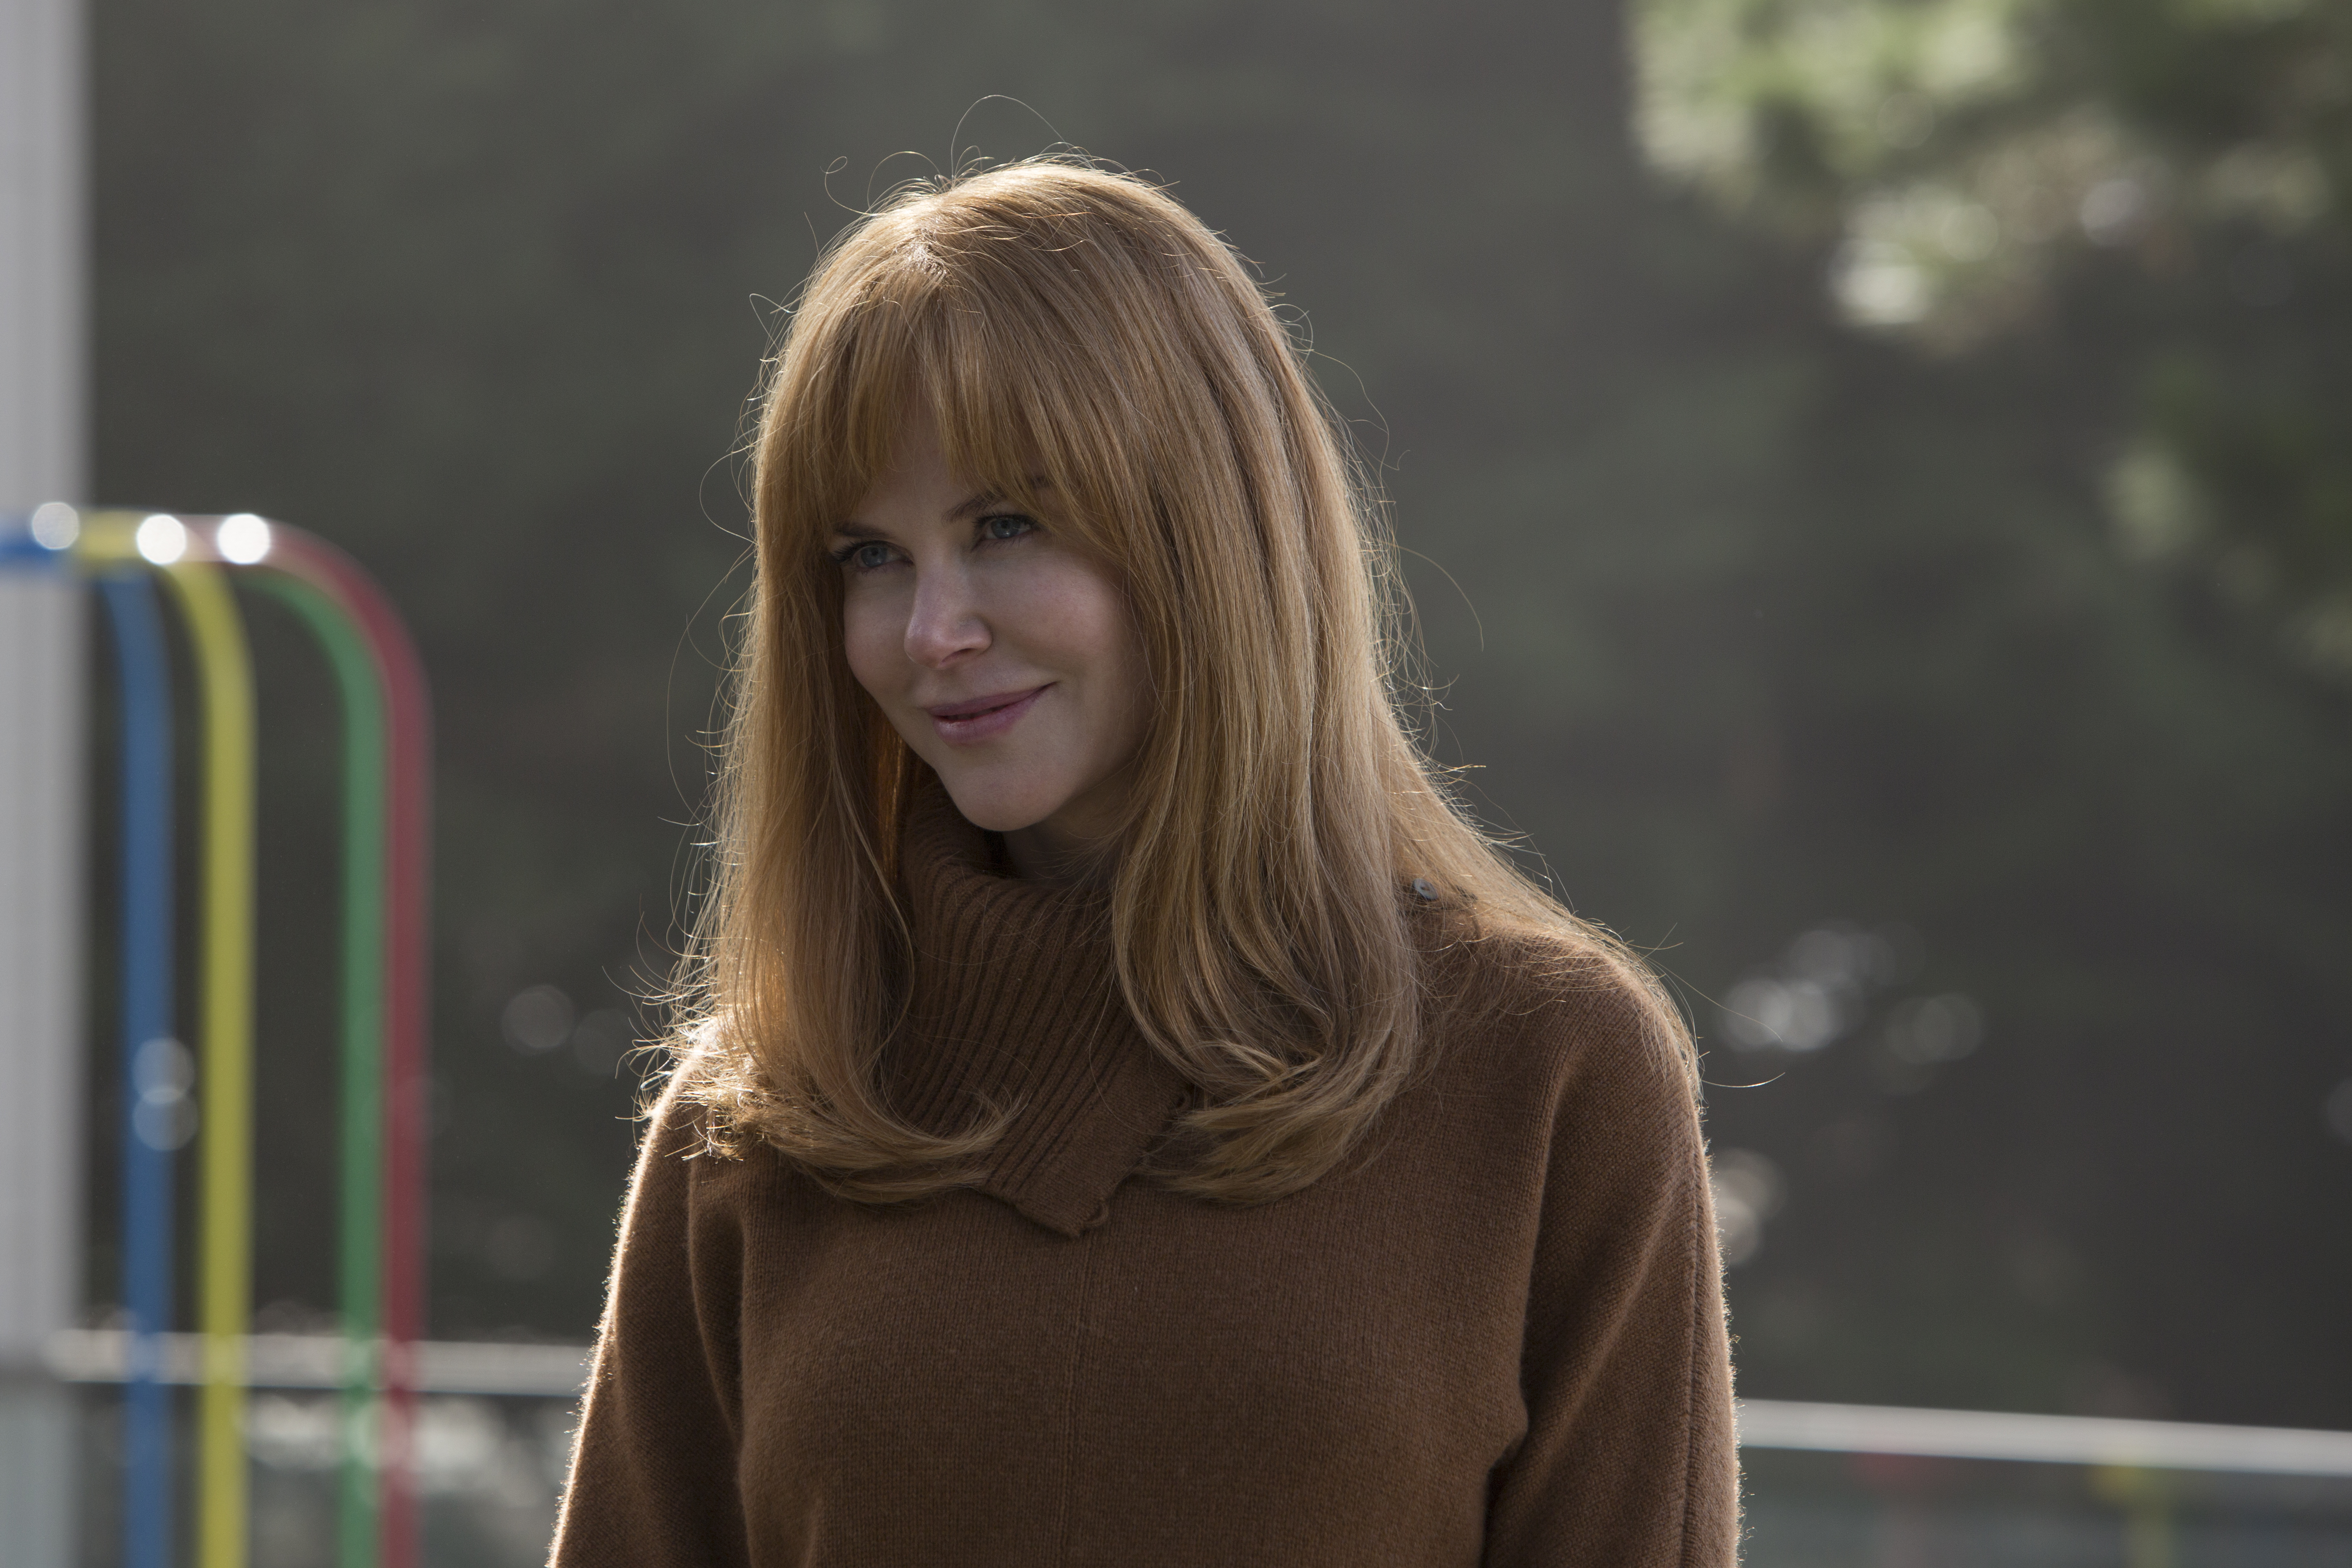 Sebek és zúzódások - így reagált Nicole Kidman férje, amikor felfedezte  párja sérüléseit - Blikk